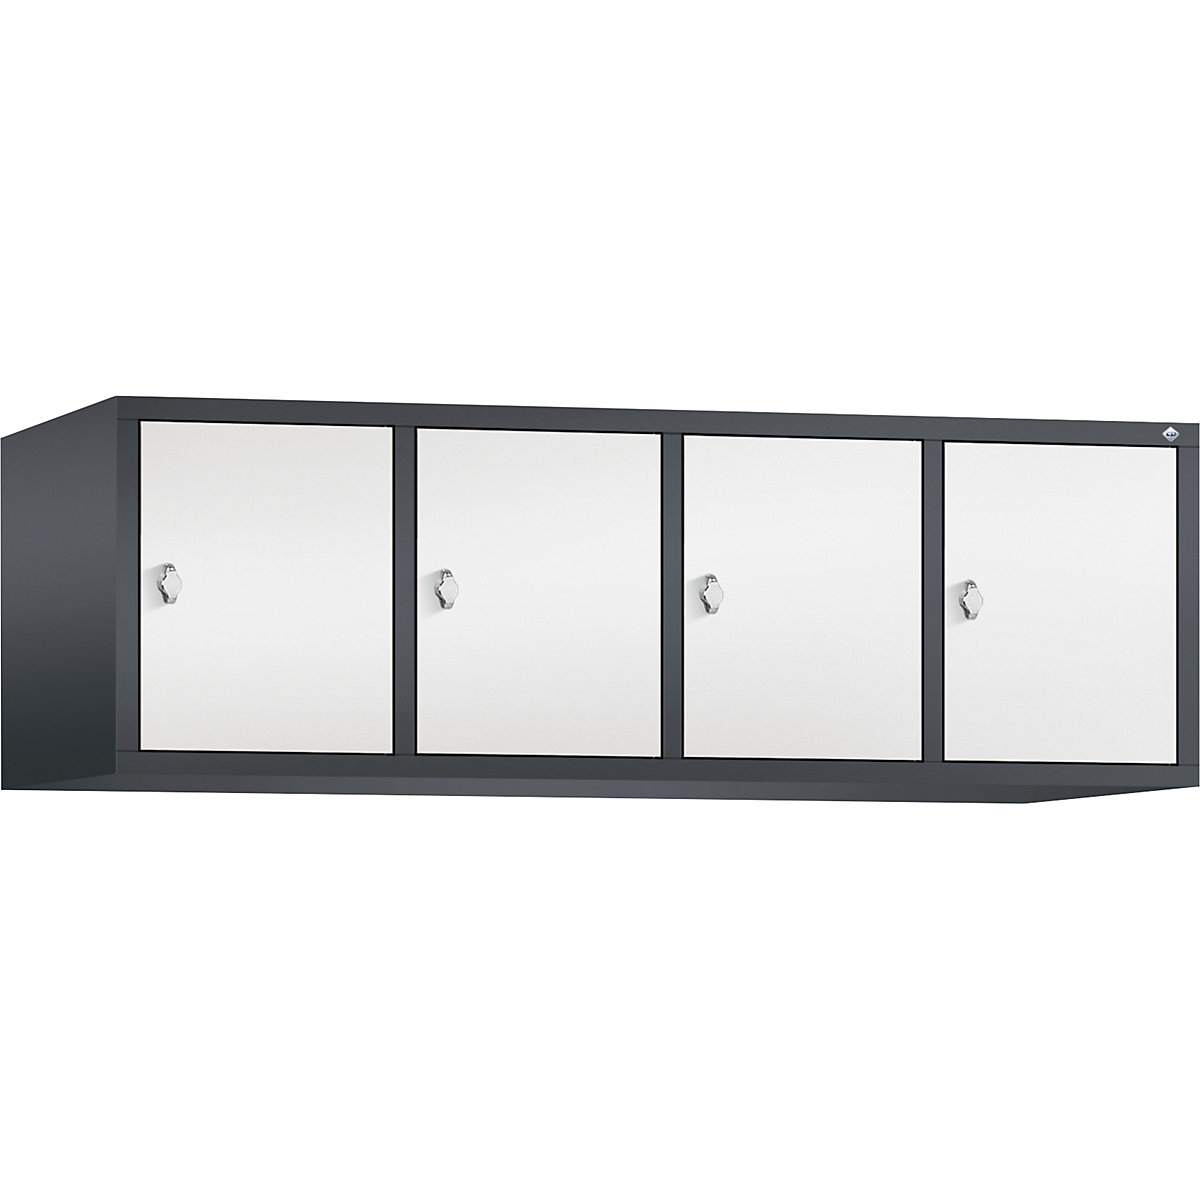 C+P – Altillo CLASSIC, 4 compartimentos, anchura de compartimento 400 mm, gris negruzco / blanco tráfico